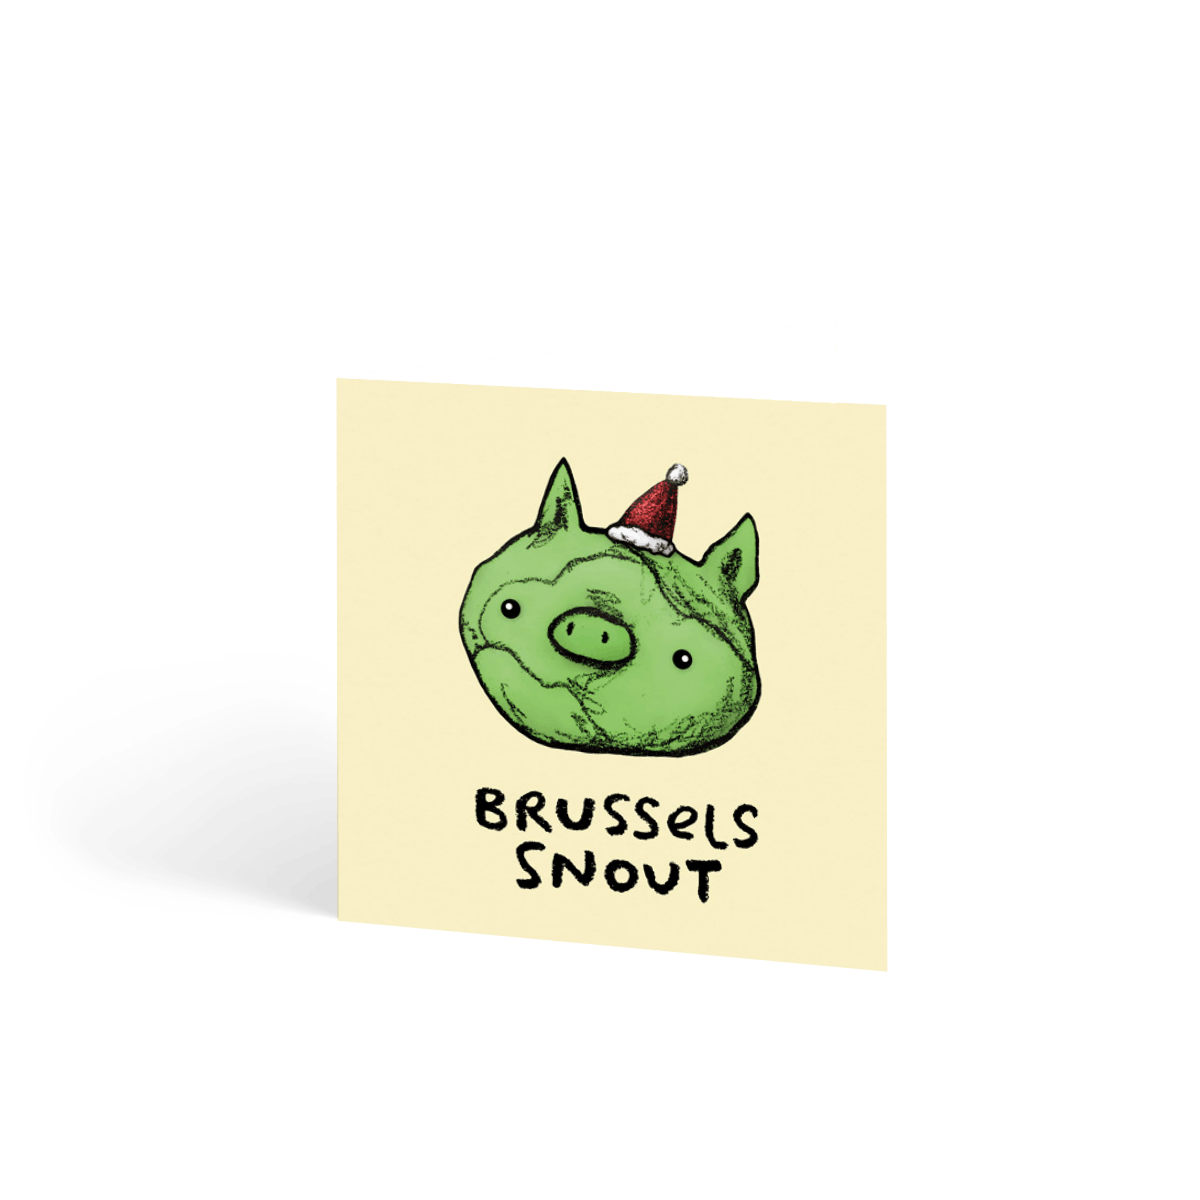 Brussels Snout